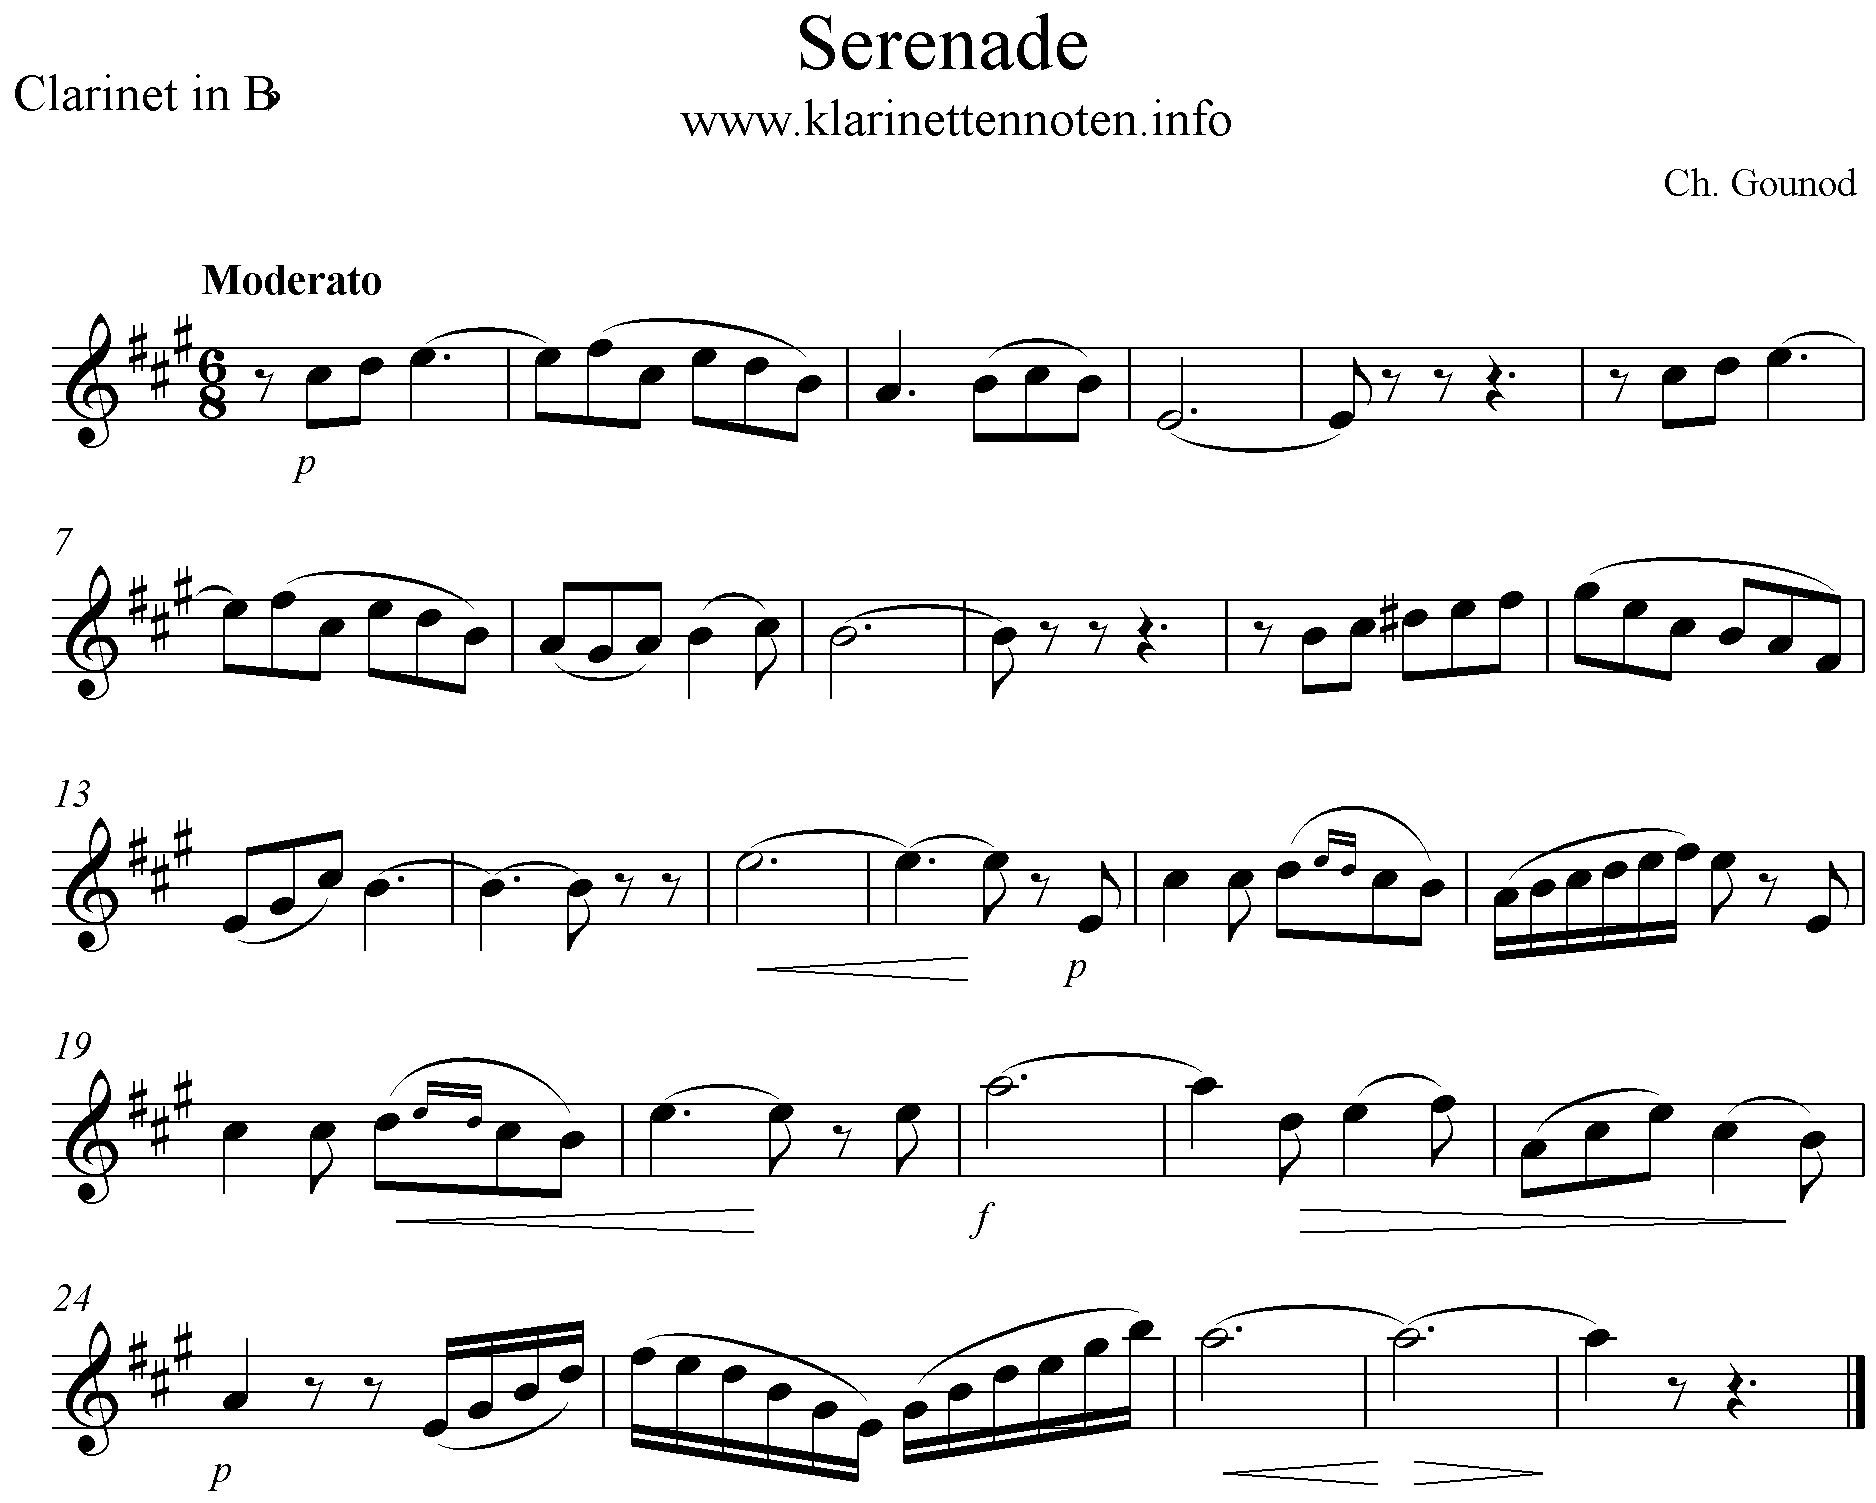 Serenade Ch. Gounod, Clarinet, Klarinette